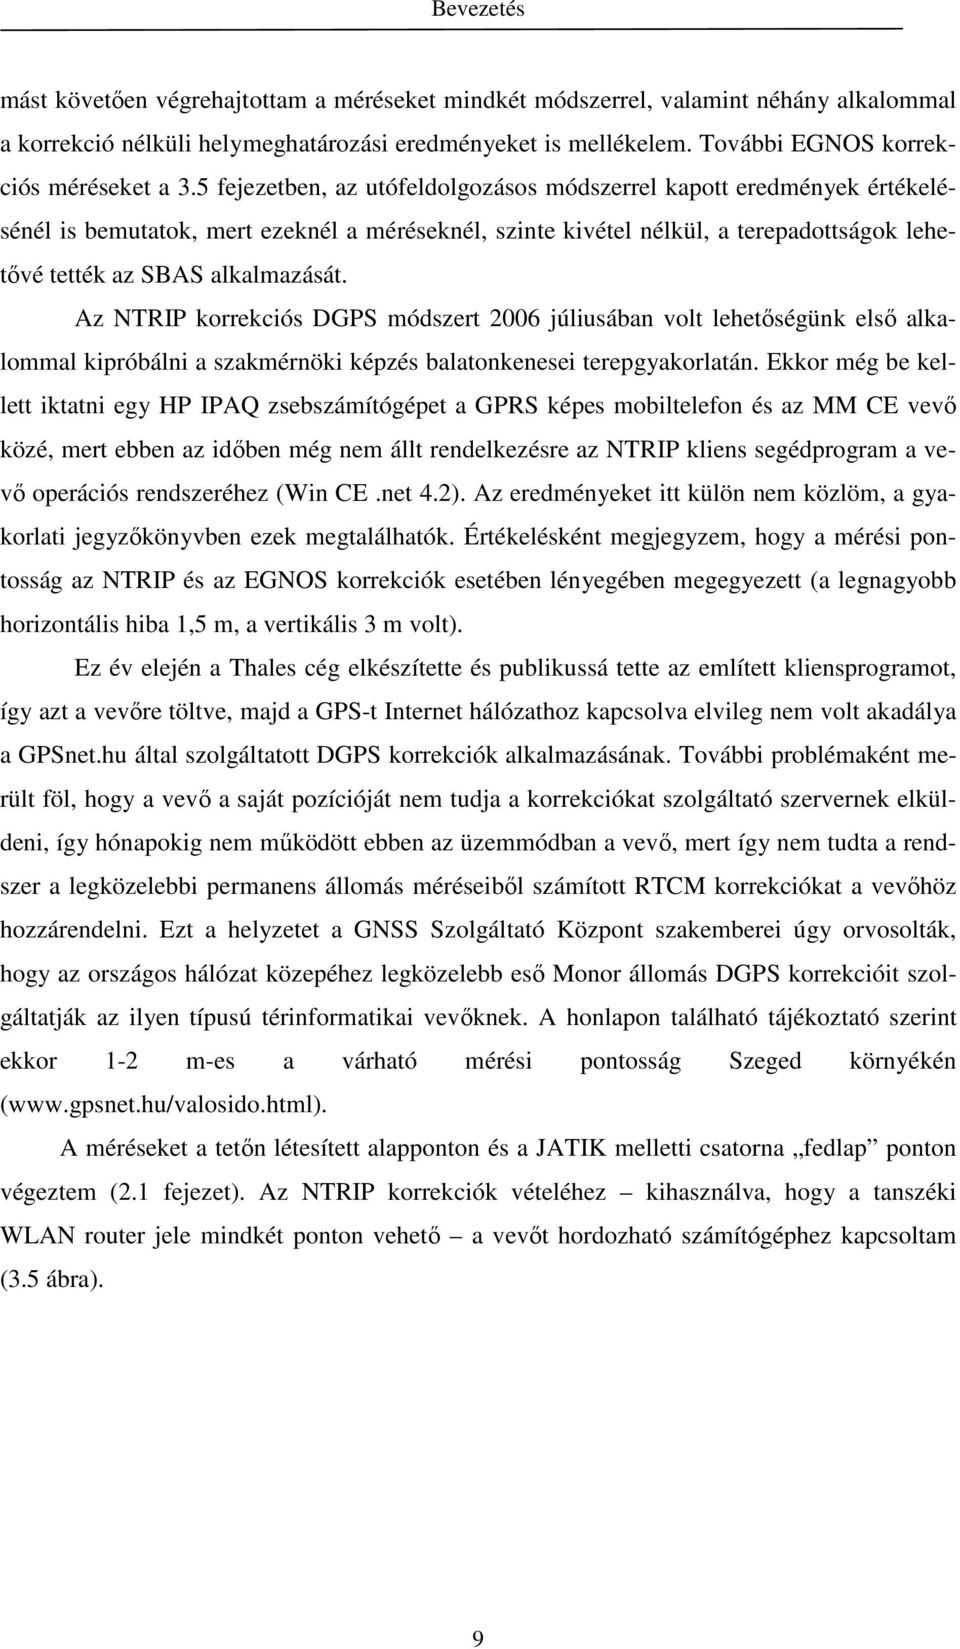 Az NTRIP korrekciós DGPS módszert 2006 júliusában volt lehetıségünk elsı alkalommal kipróbálni a szakmérnöki képzés balatonkenesei terepgyakorlatán.